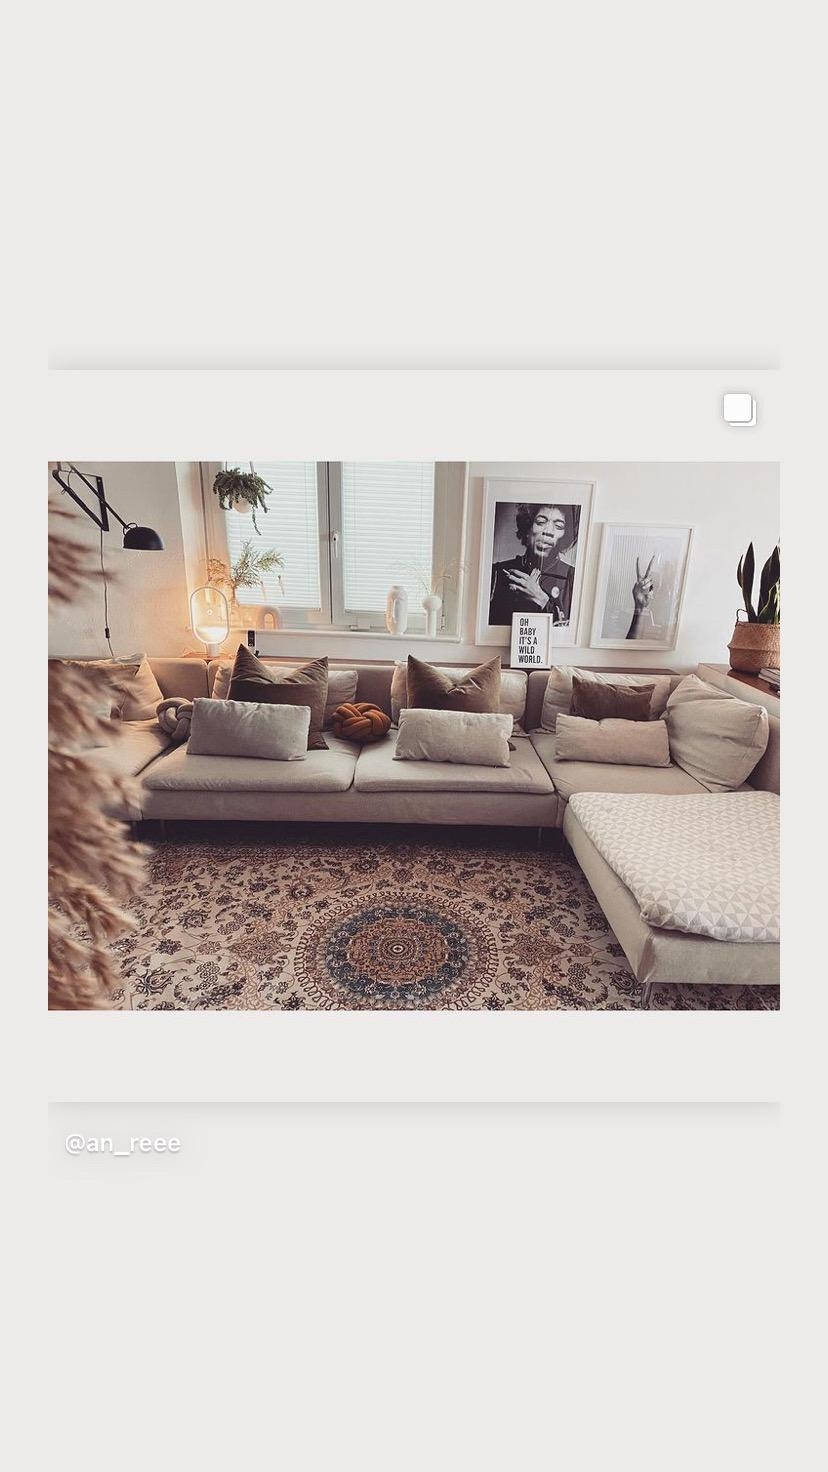 Jetzt wirds gemütlich #teppichliebe #cozy#livingroom